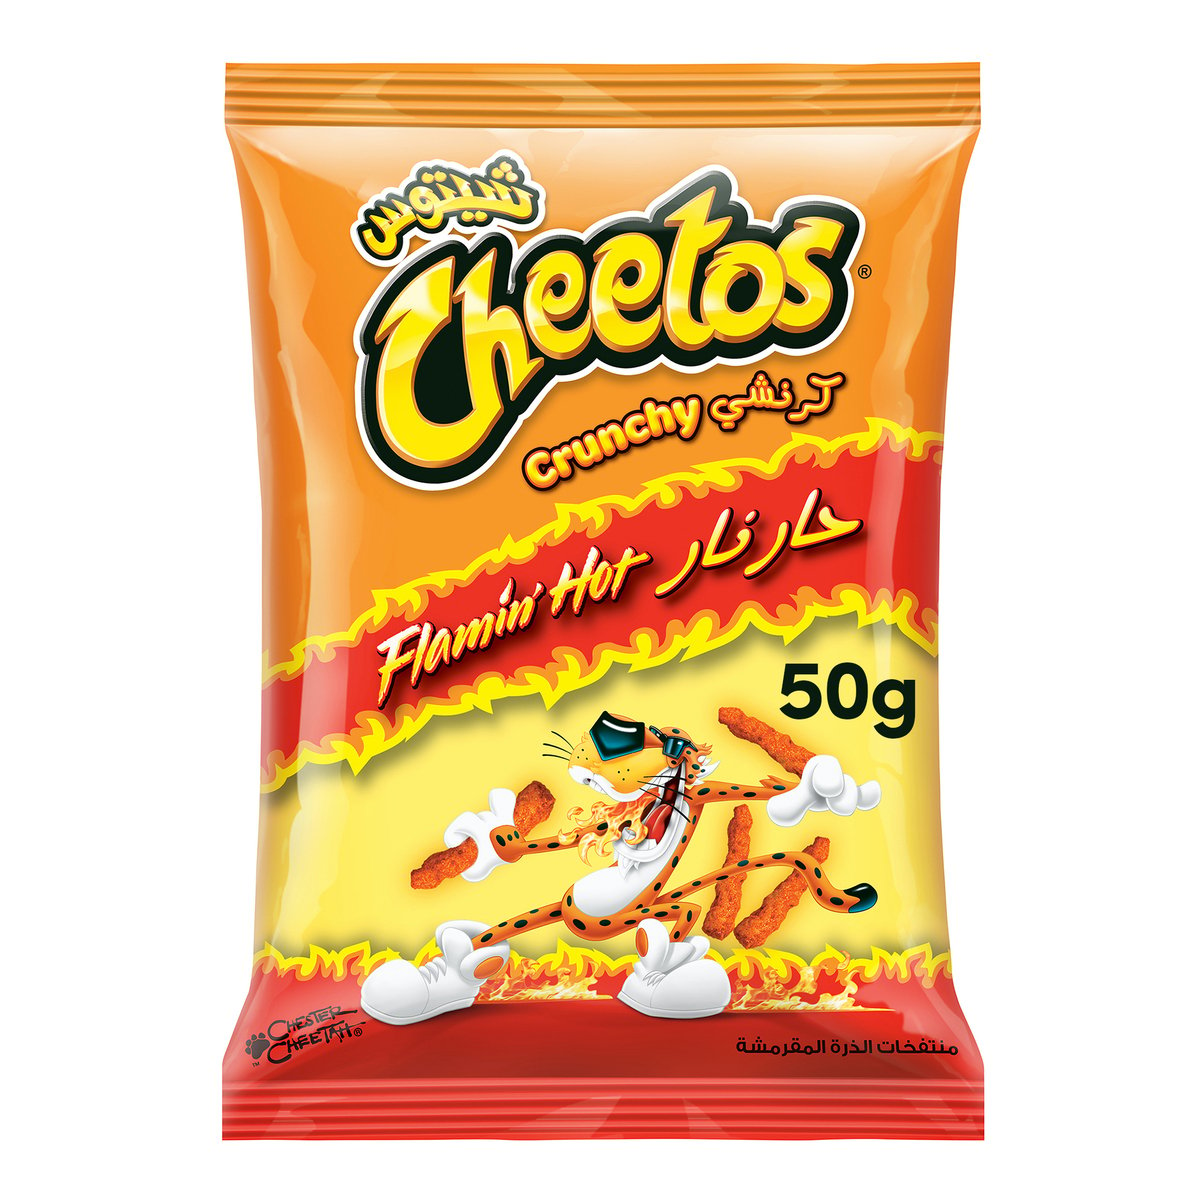 Cheetos Crunchy Flaming Hot Chips 50g